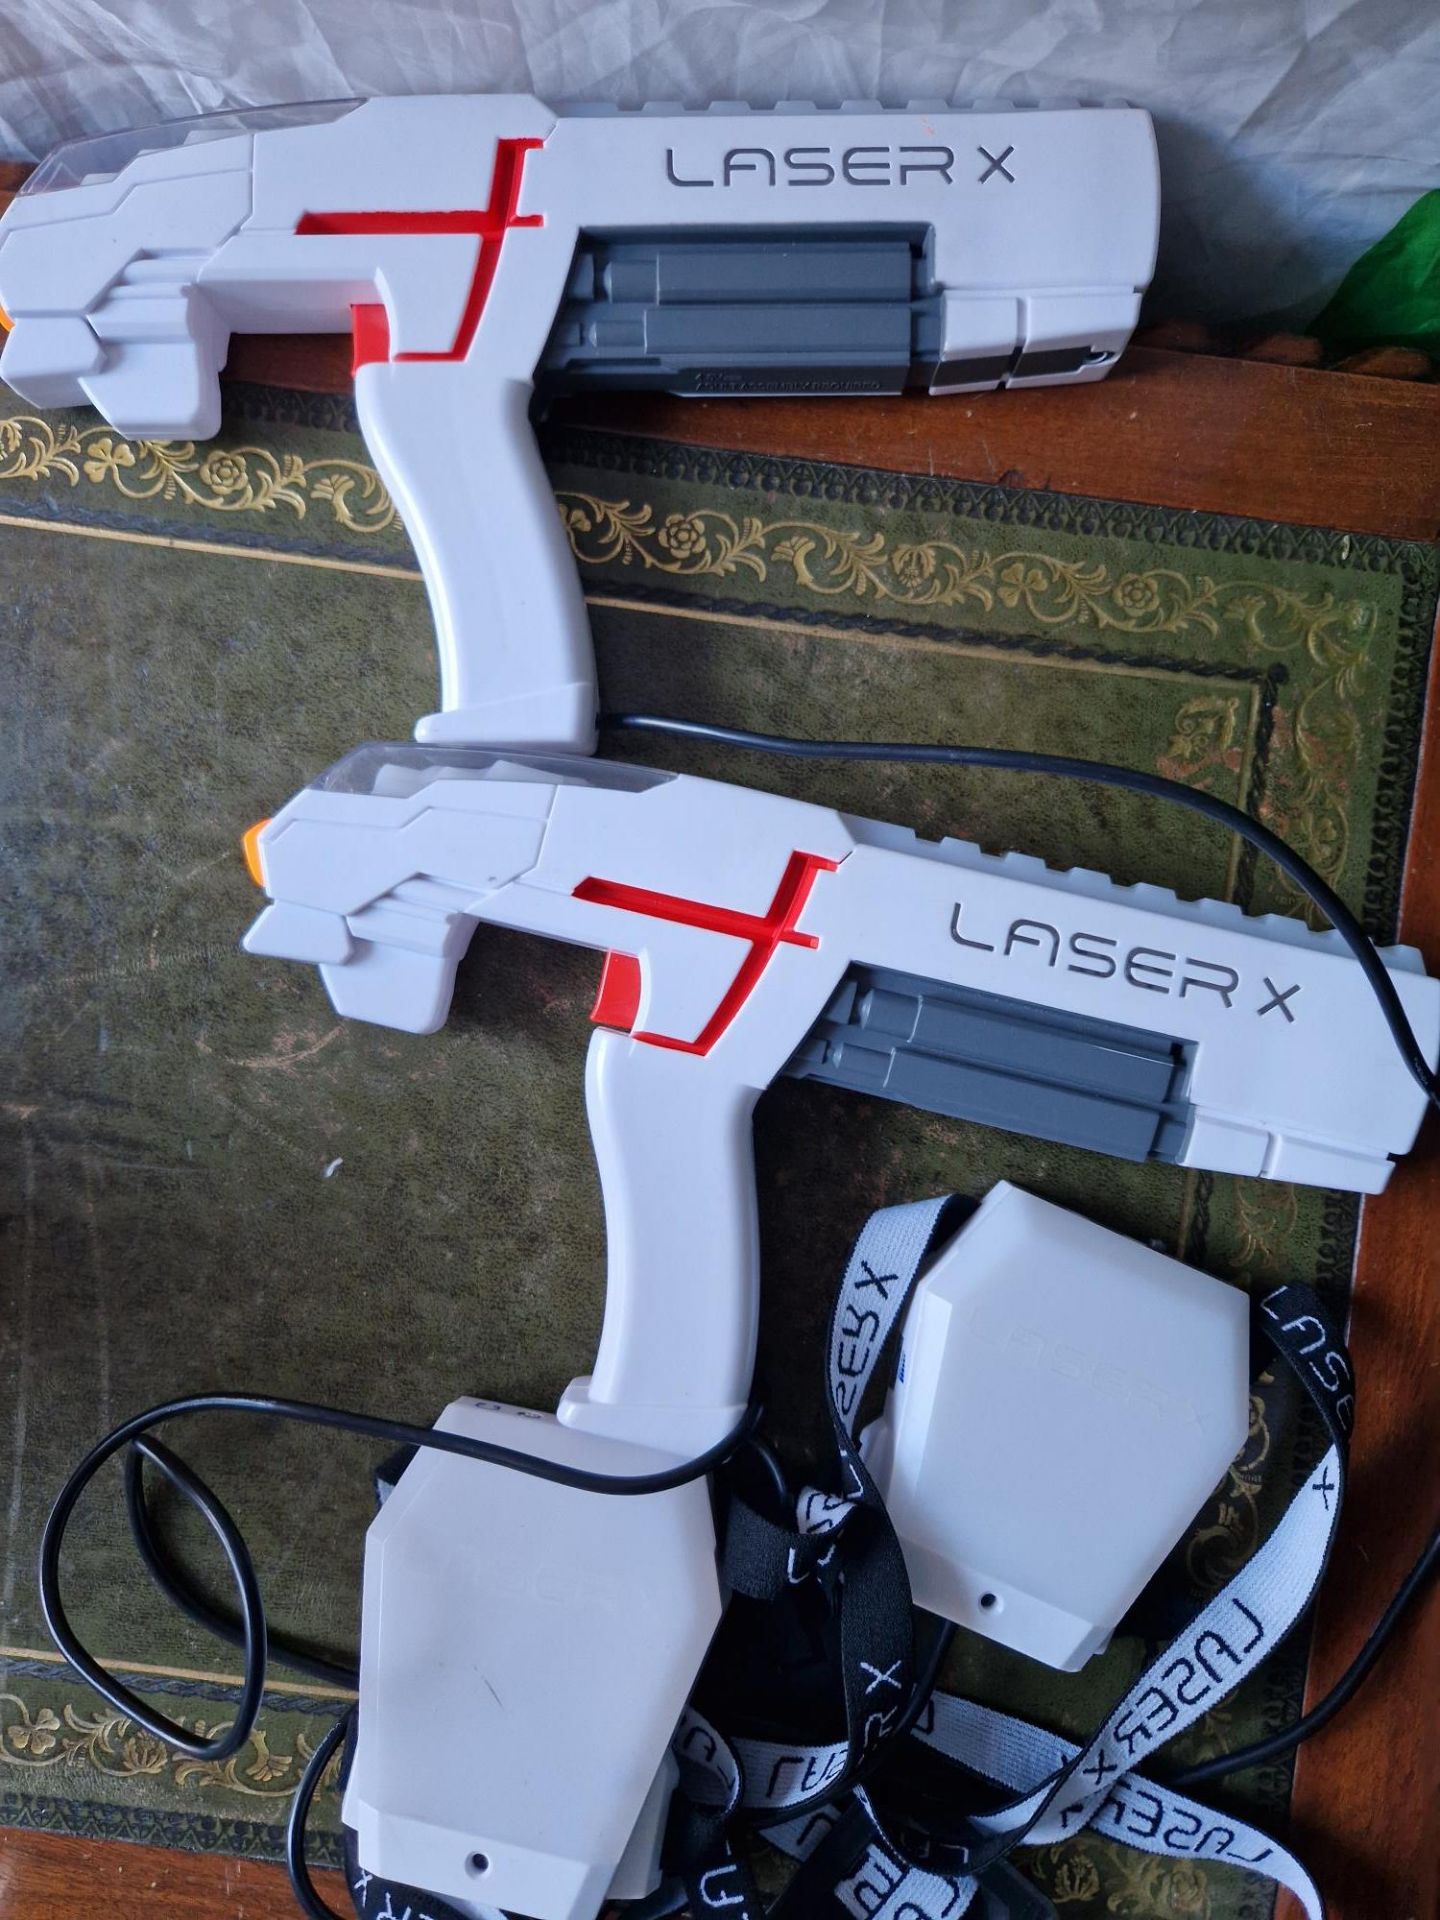 Laser X Toy guns